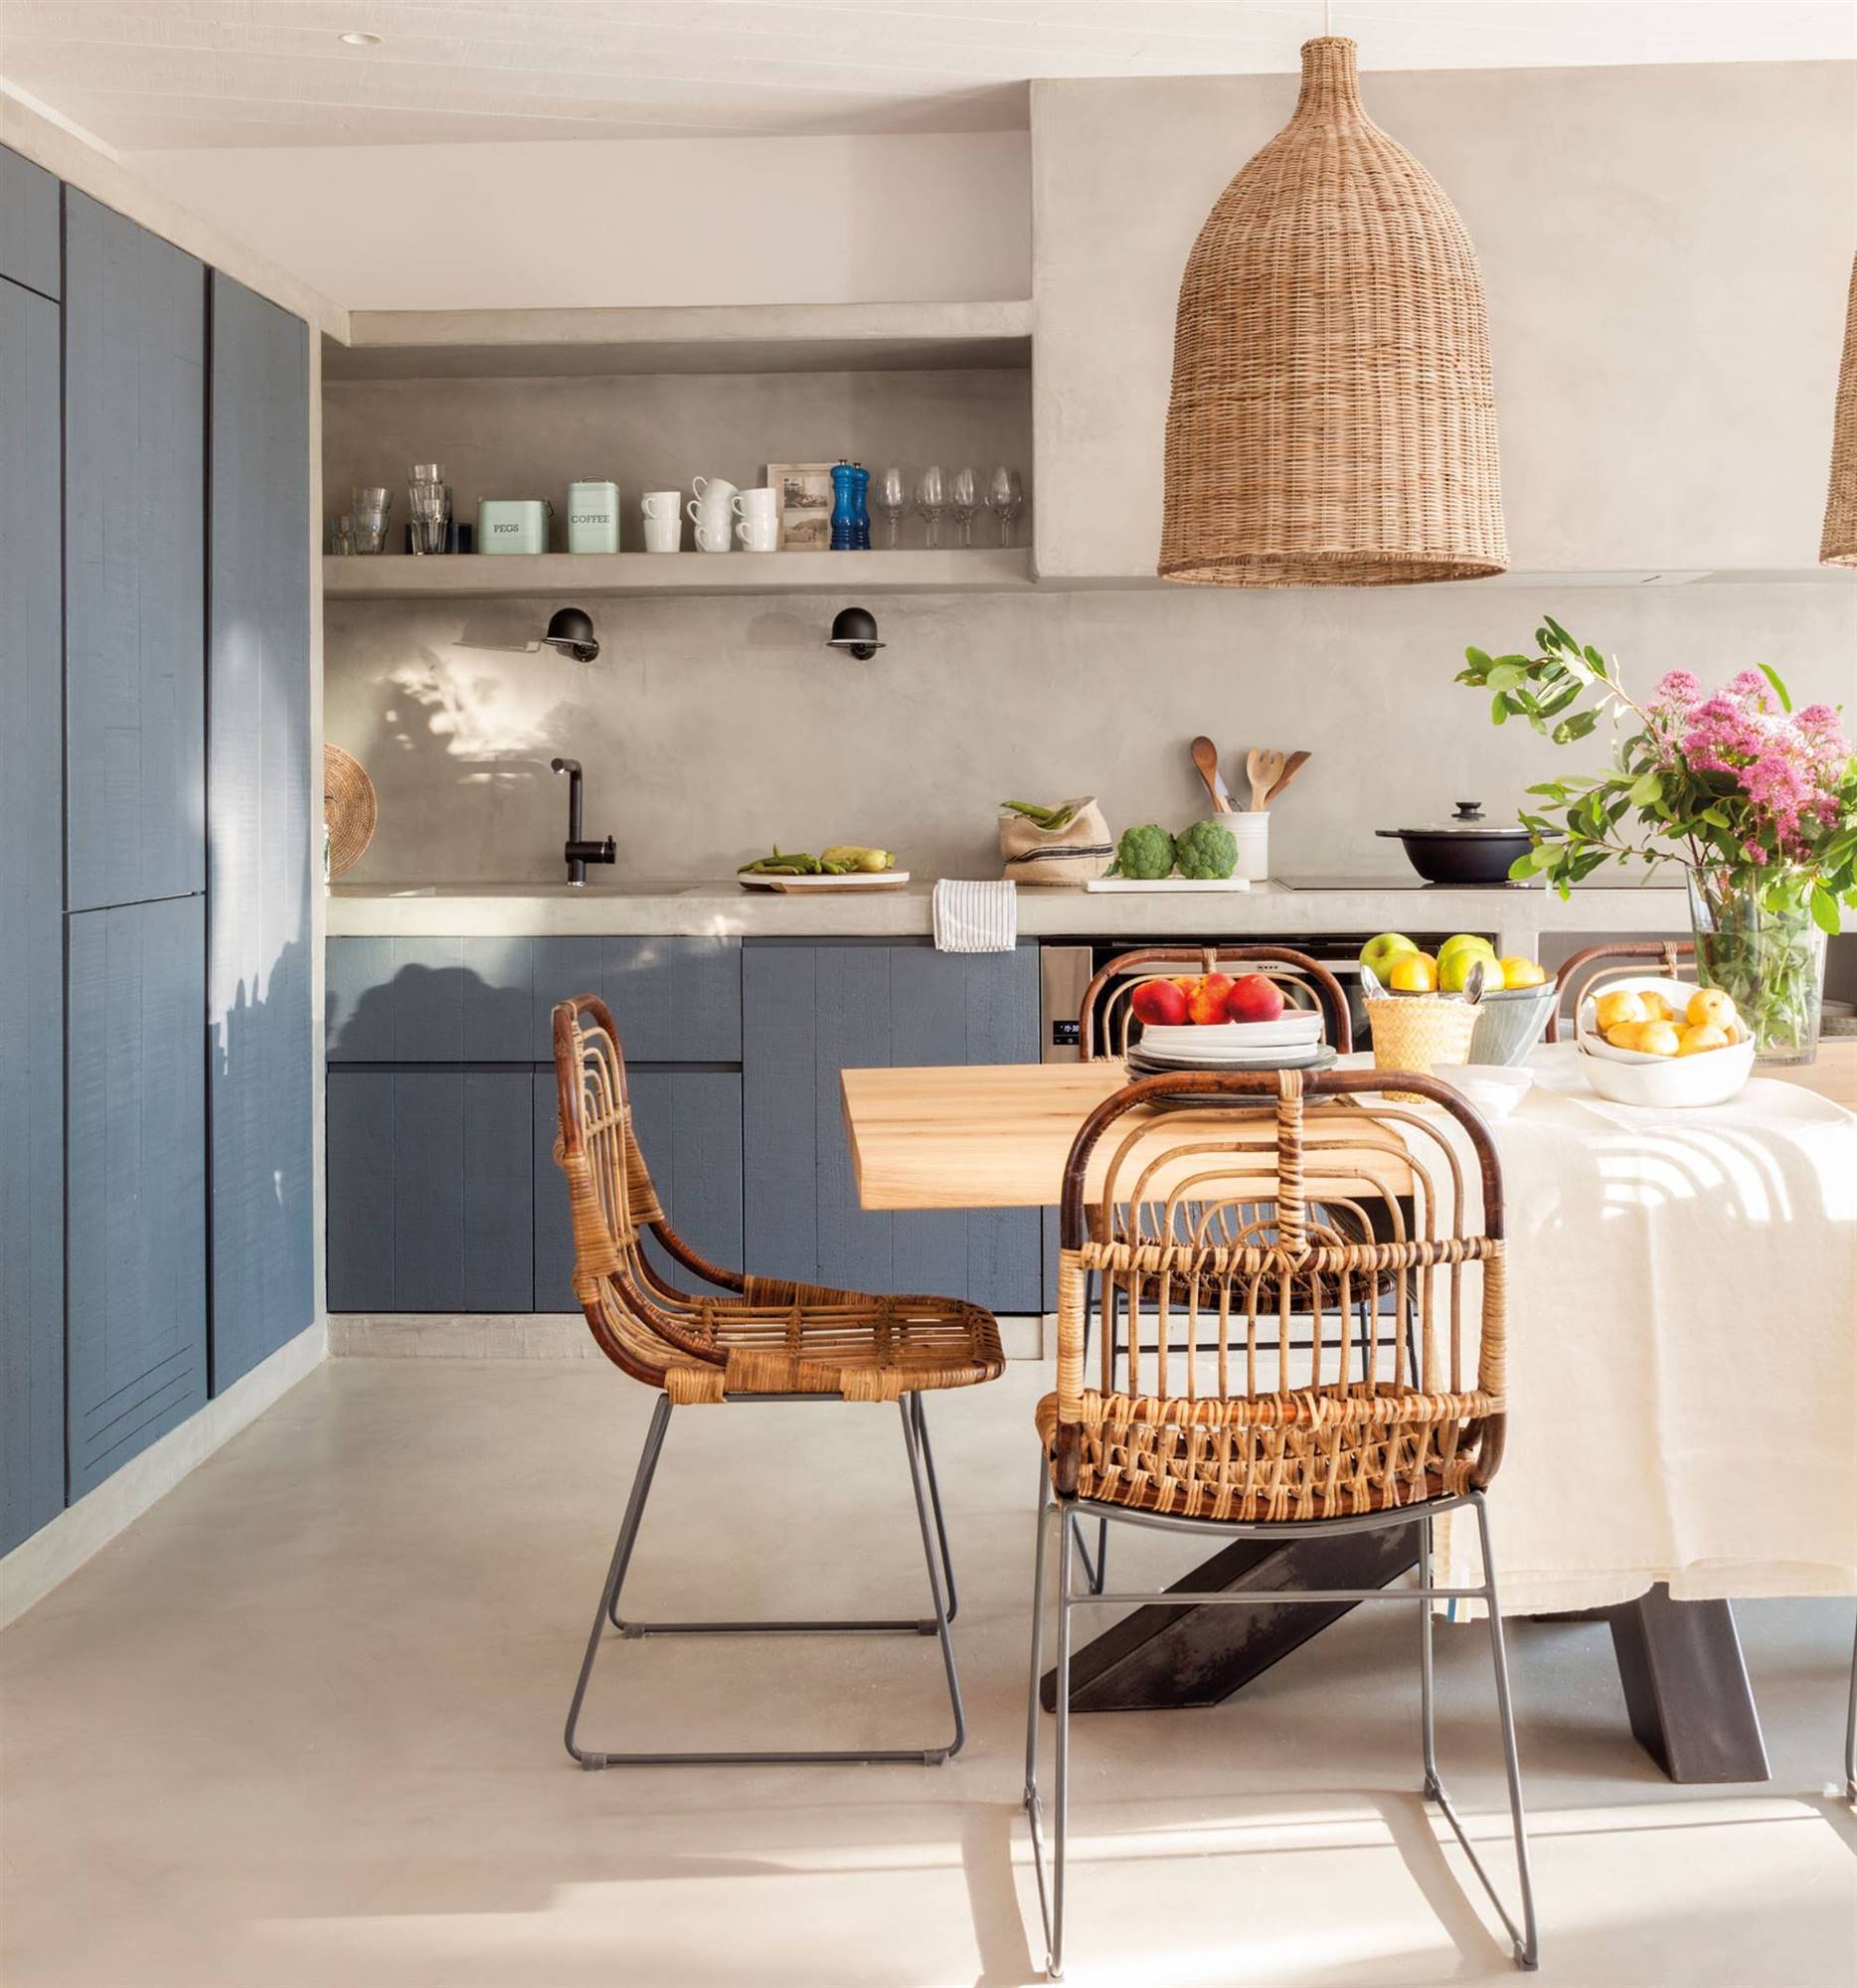 Moderna cocina con mobiliario en color azul y detalles de fibras naturales.